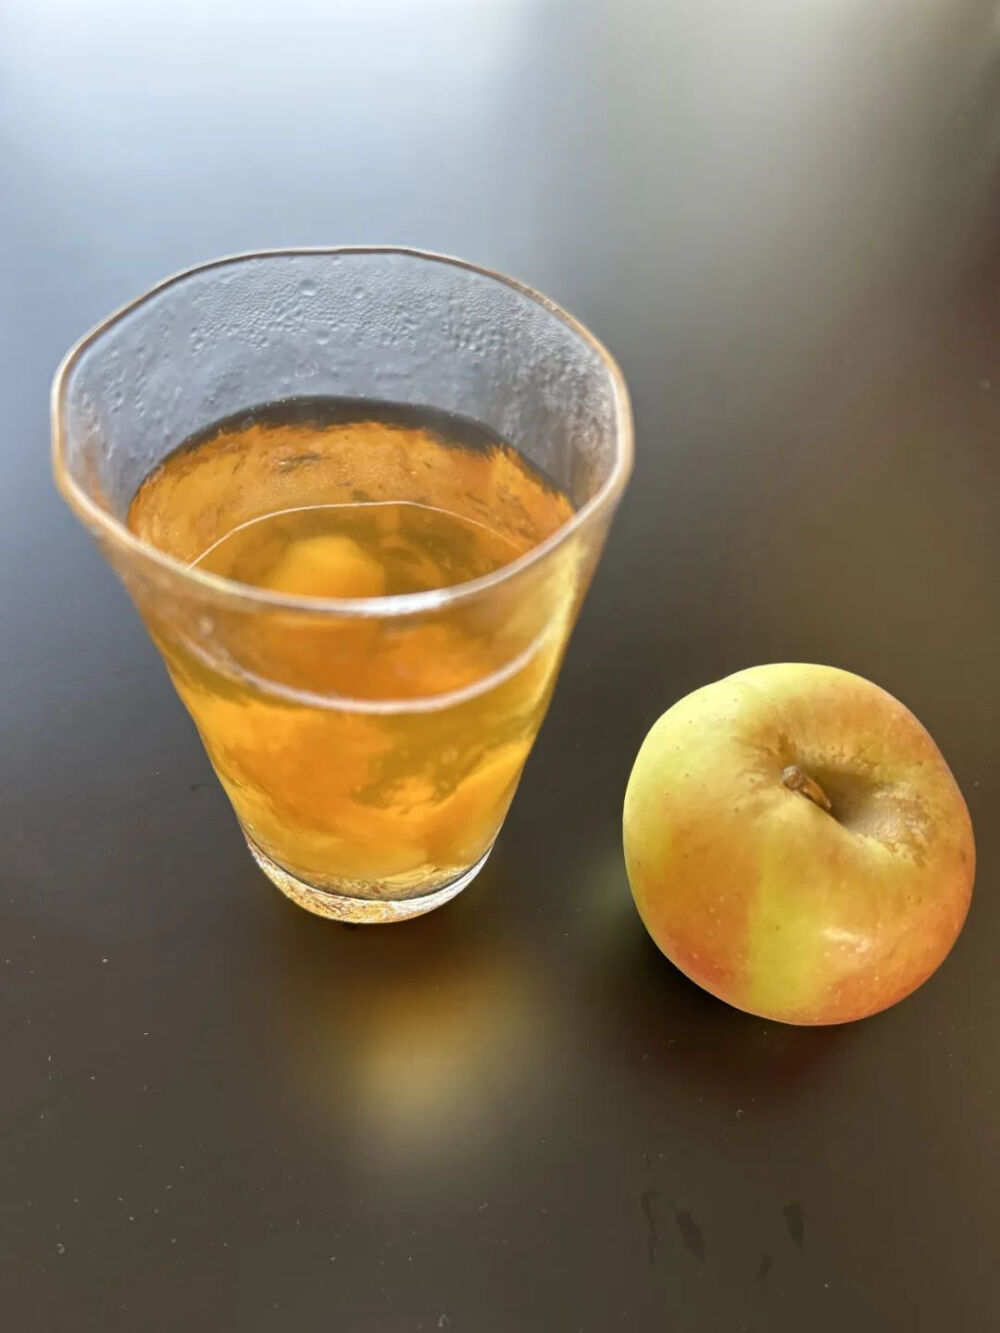 做法很简单，准备 1 个苹果，洗净切成小块（去不去皮都可以）；3~4 颗红枣，清洗去核；再来一小把枸杞，洗干净。加上水煮沸，不用煮太久，红枣和苹果的味道混合后口味超棒。